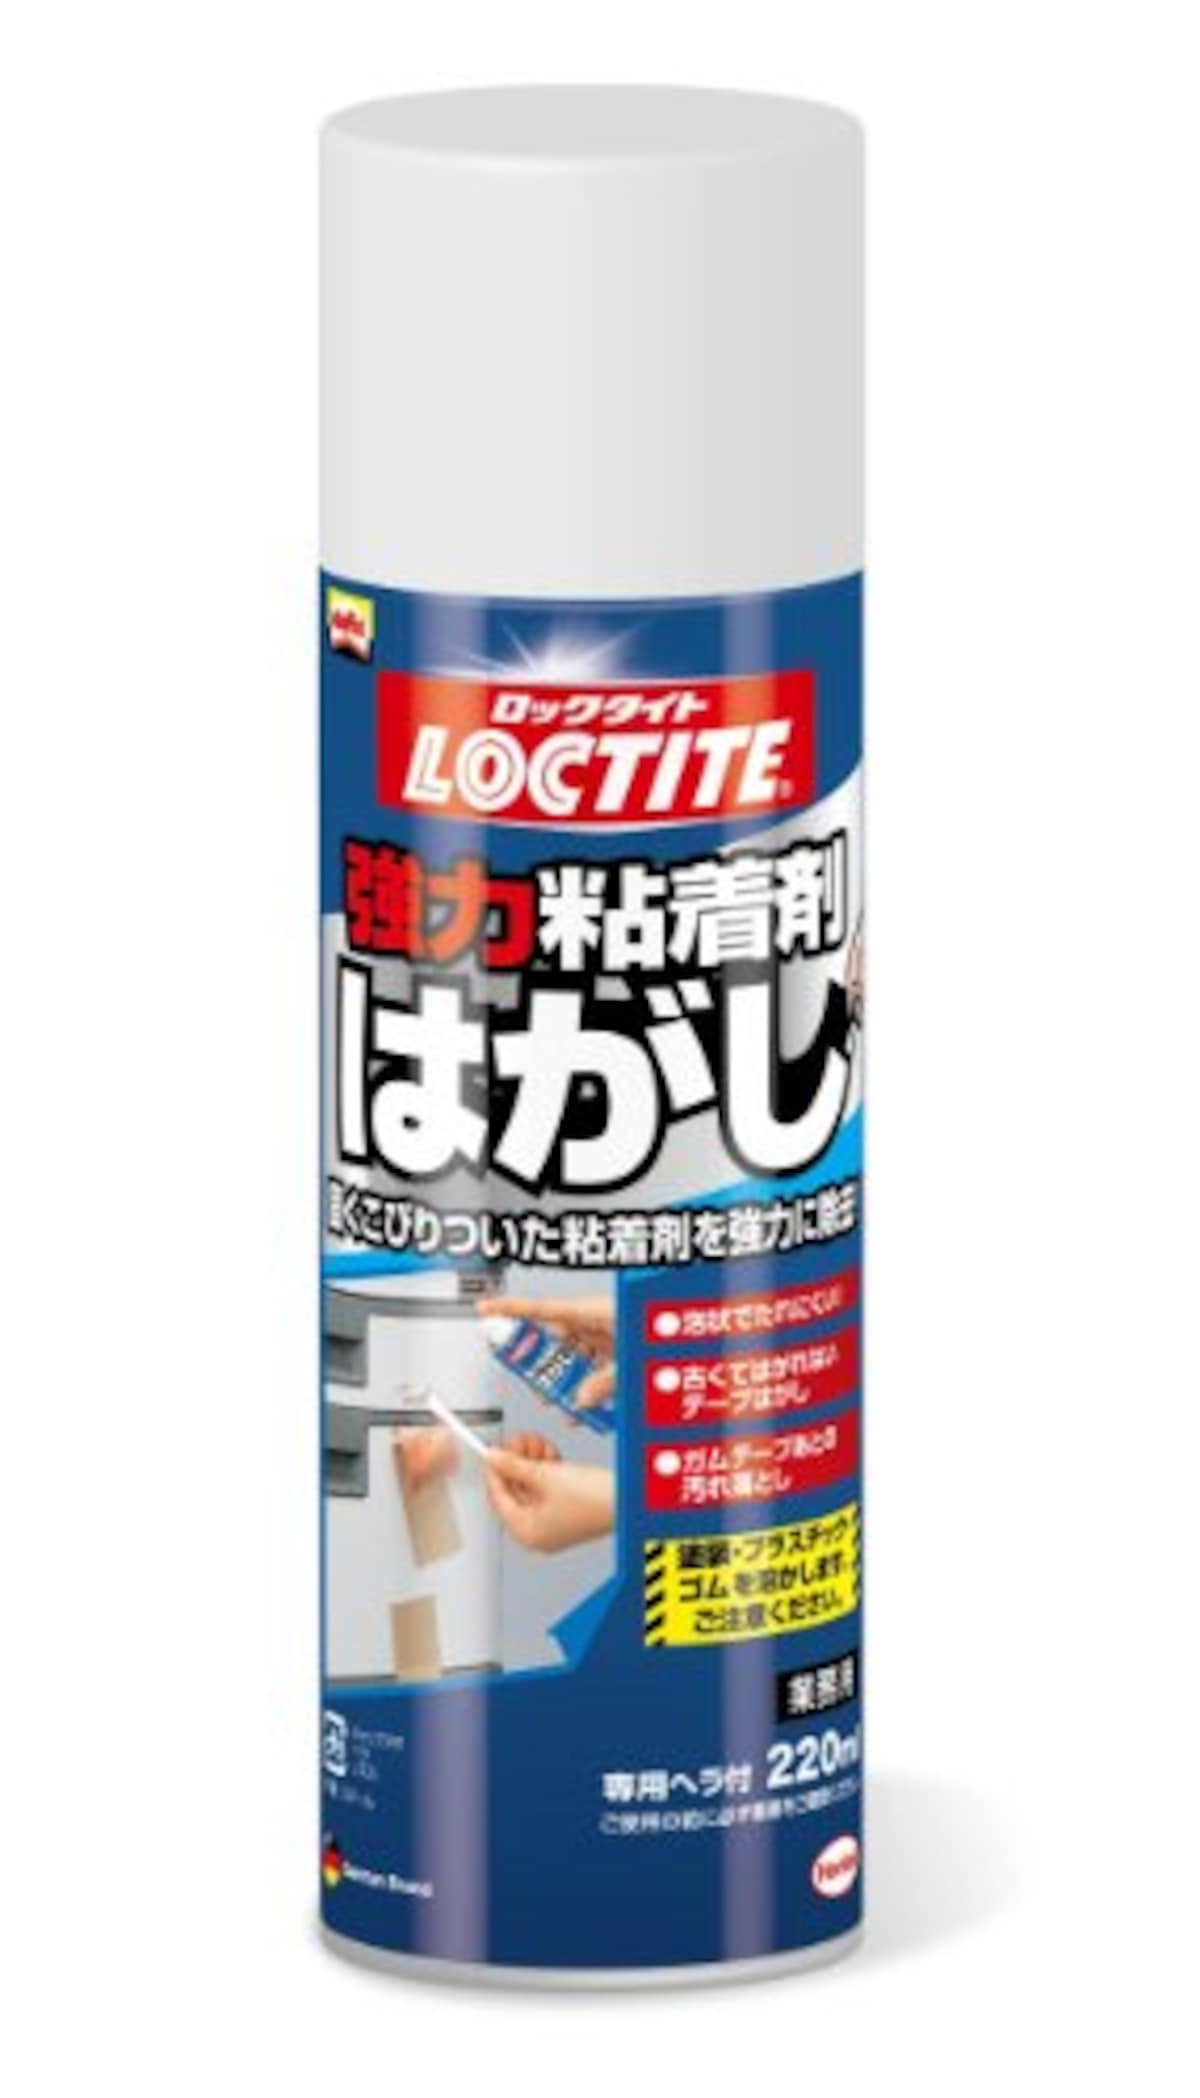 ヘンケルジャパン(Henkel Japan)のLOCTITE(ロックタイト) 強力粘着剤DKH-220 | 価格比較・レビュー評価